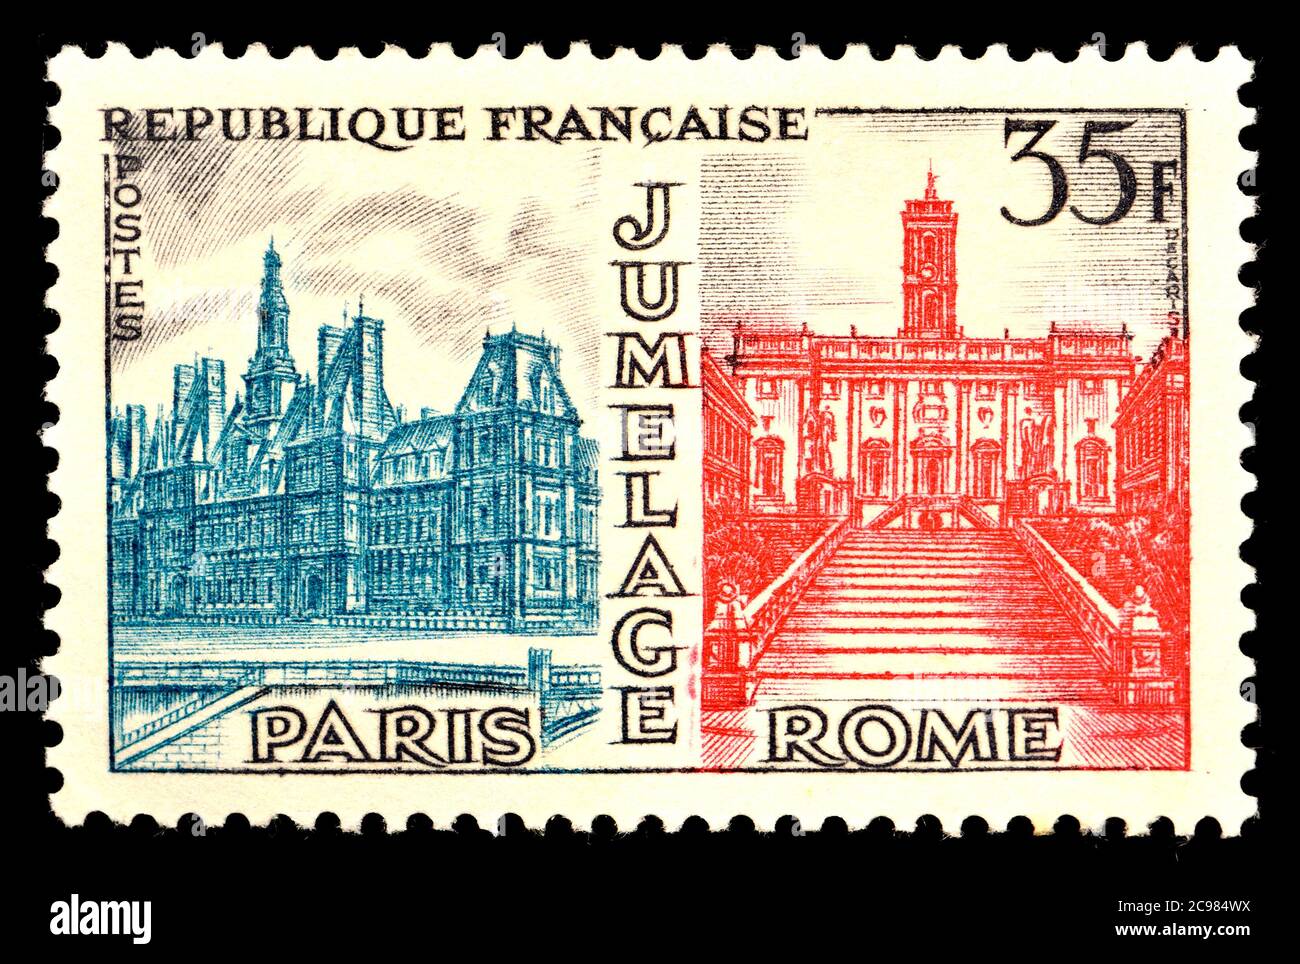 Timbre-poste français (1958) : jumelage de Rome et de Paris (1956) Banque D'Images